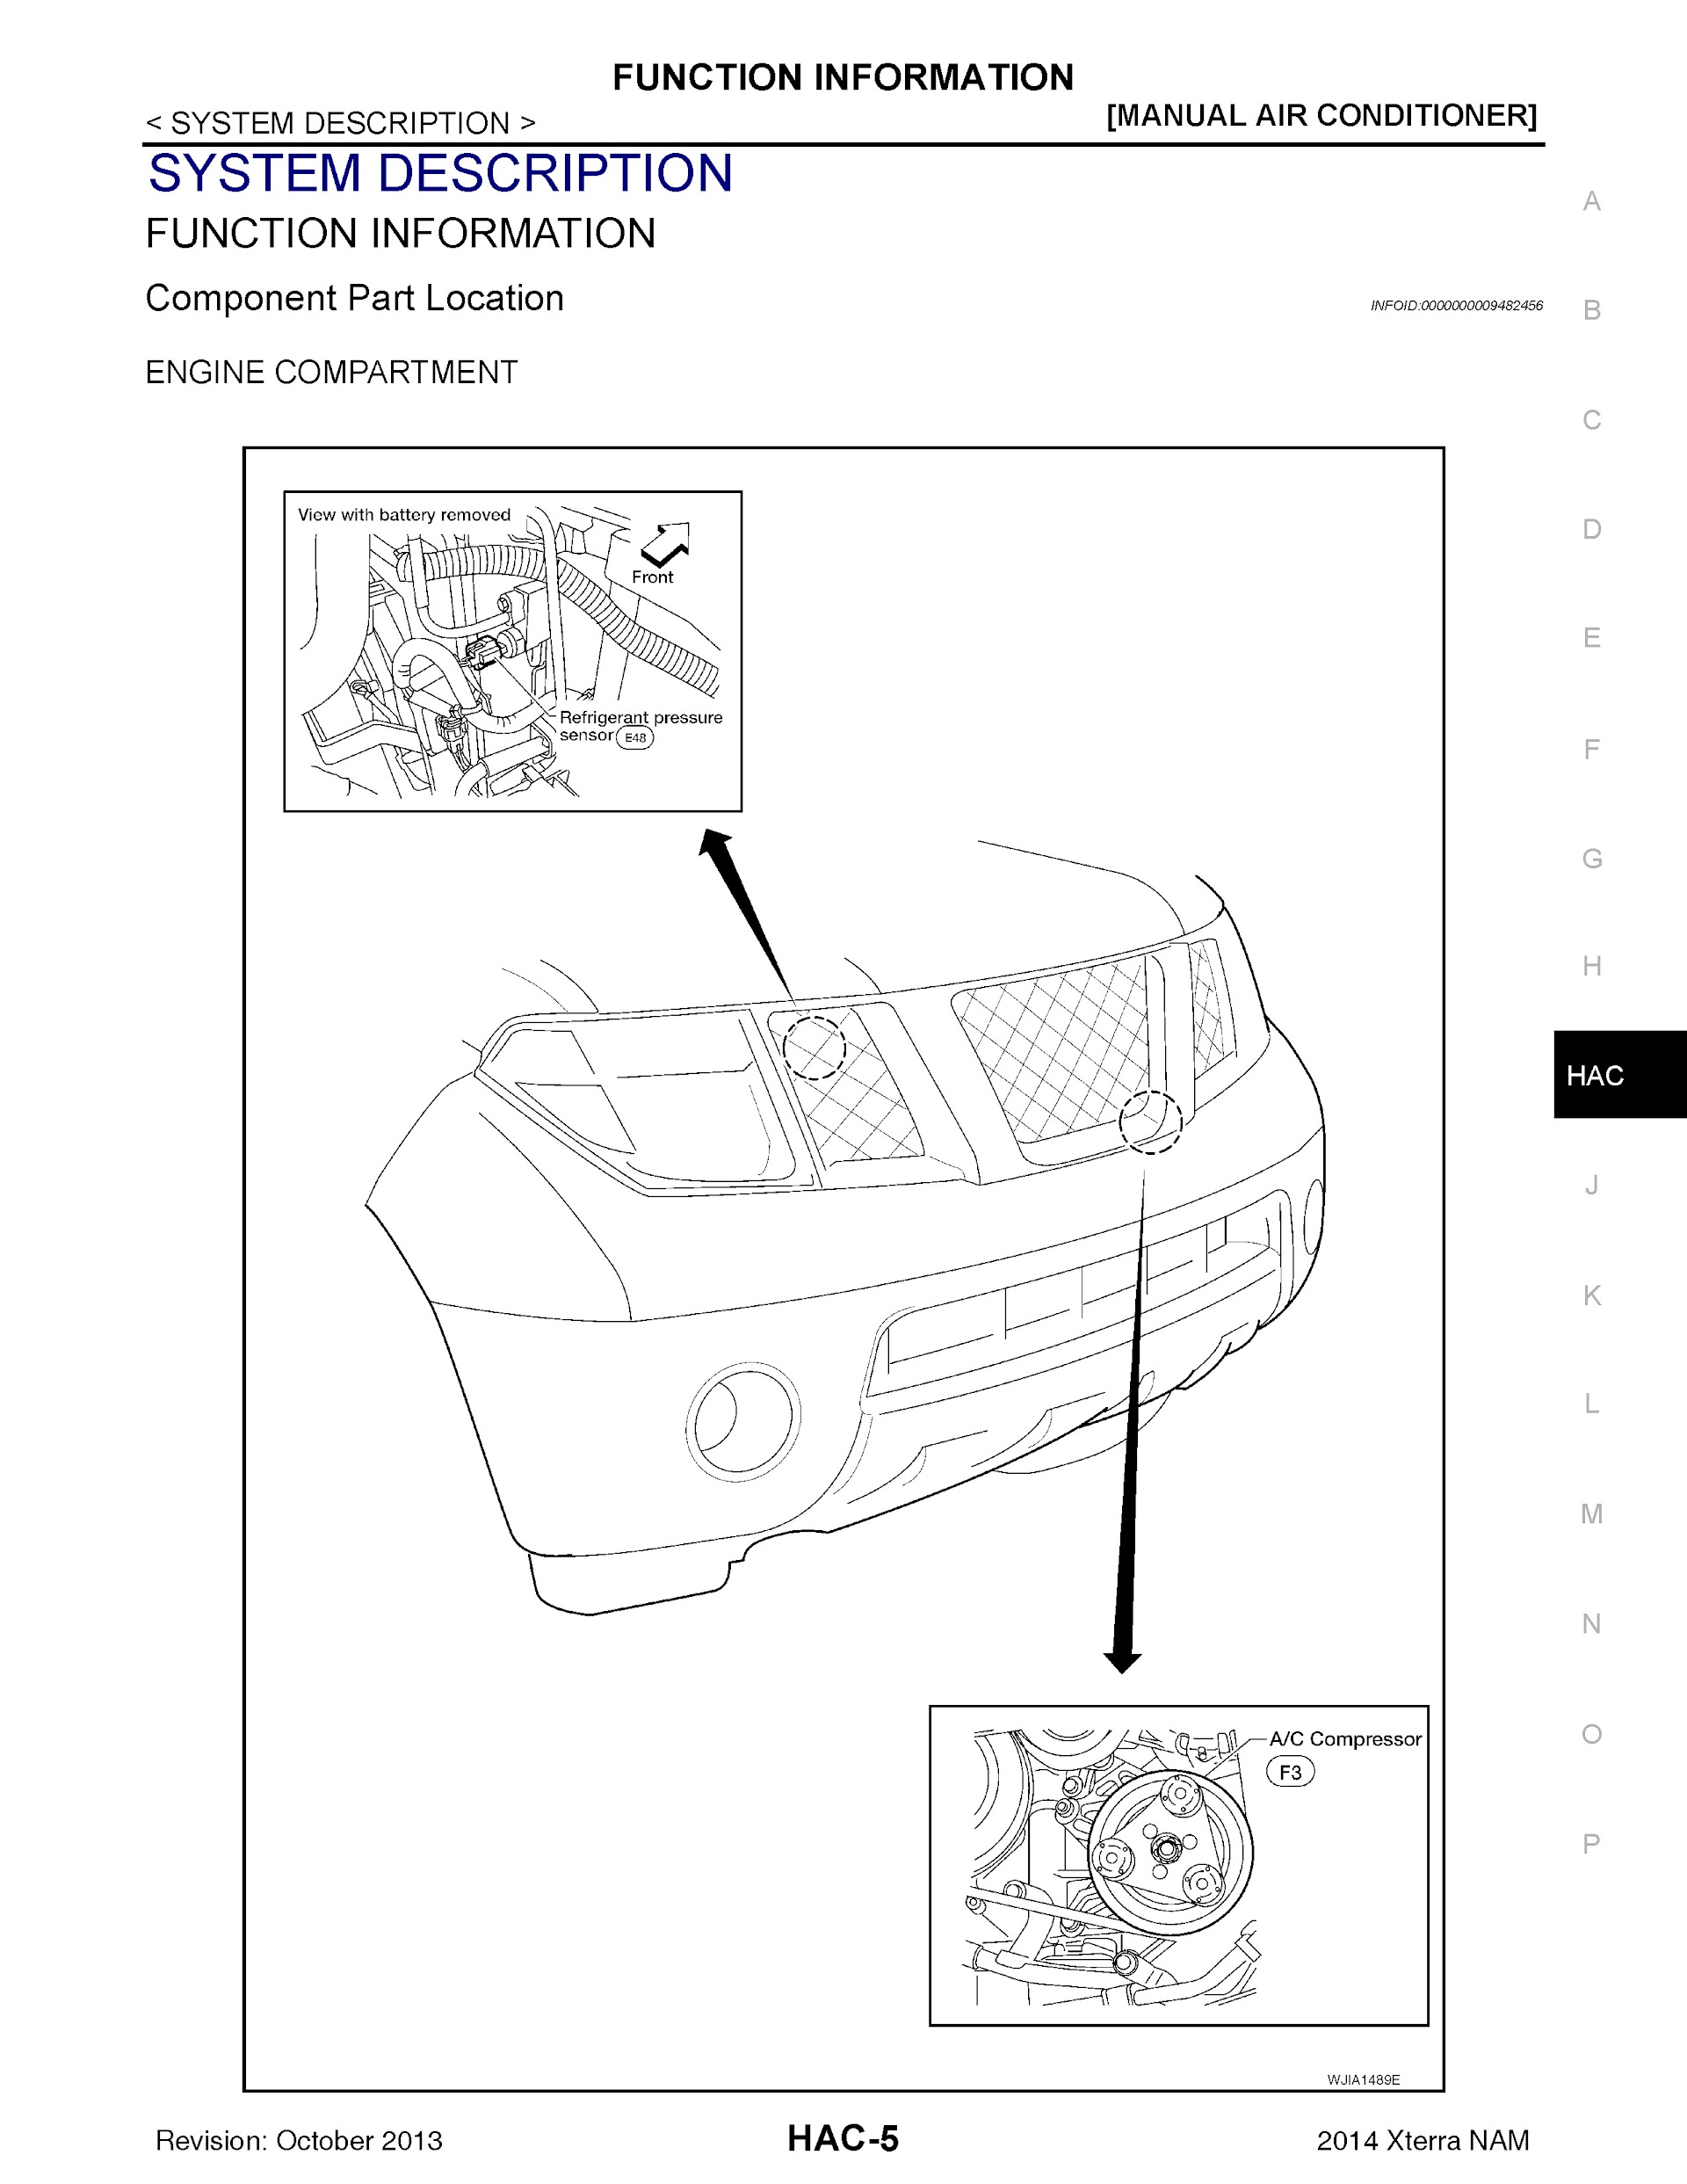 2014 Nissan Xterra Repair Manual, Manual Air Conditioner